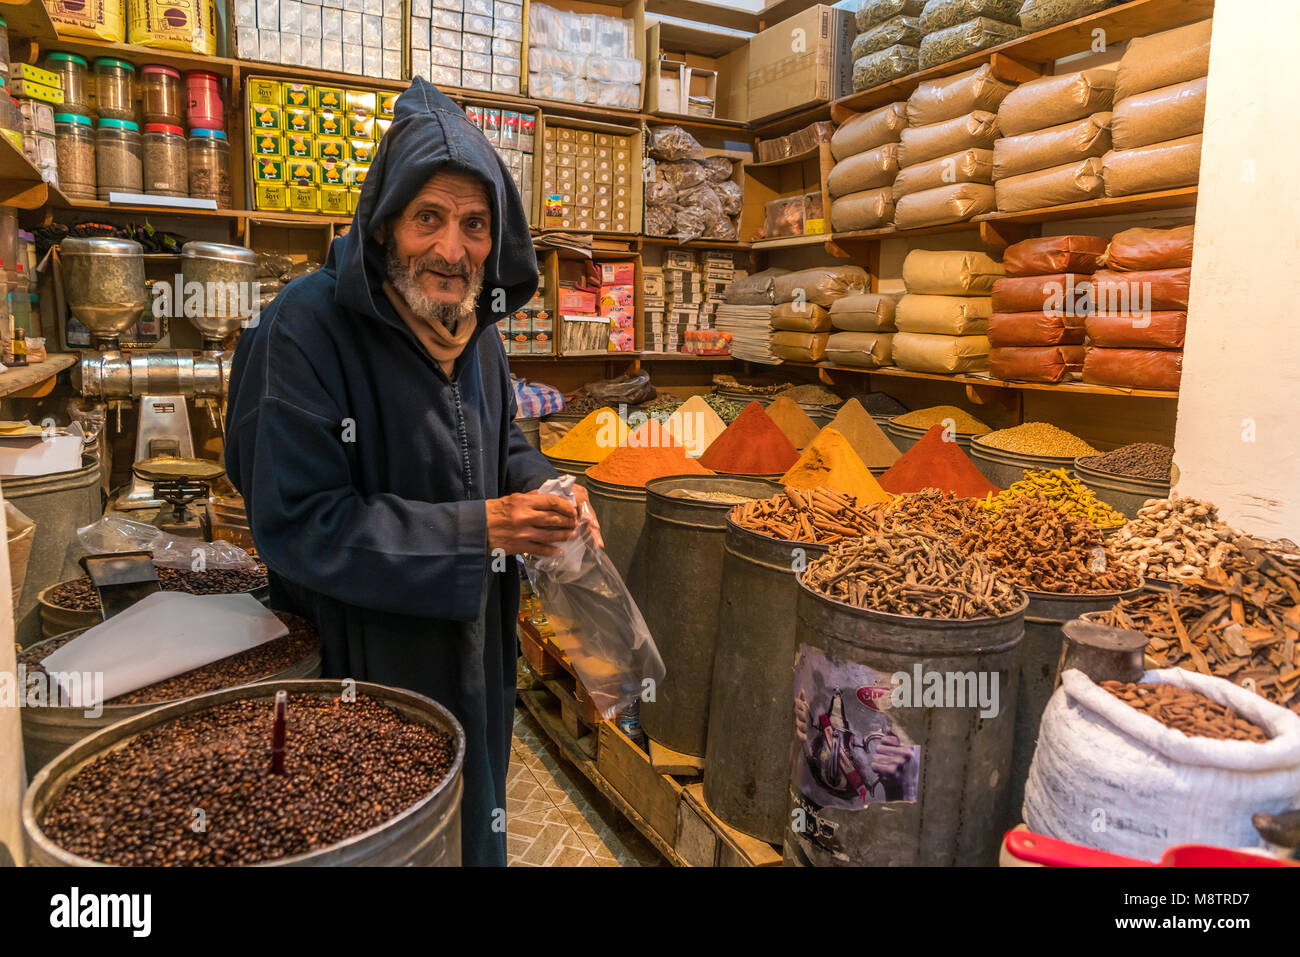 Händler mit Gewürzen, Fes Souk im Königreich Marokko, Afrika, épices | vendeur dans le vieux souk, Fes, Royaume du Maroc, l'Afrique Banque D'Images